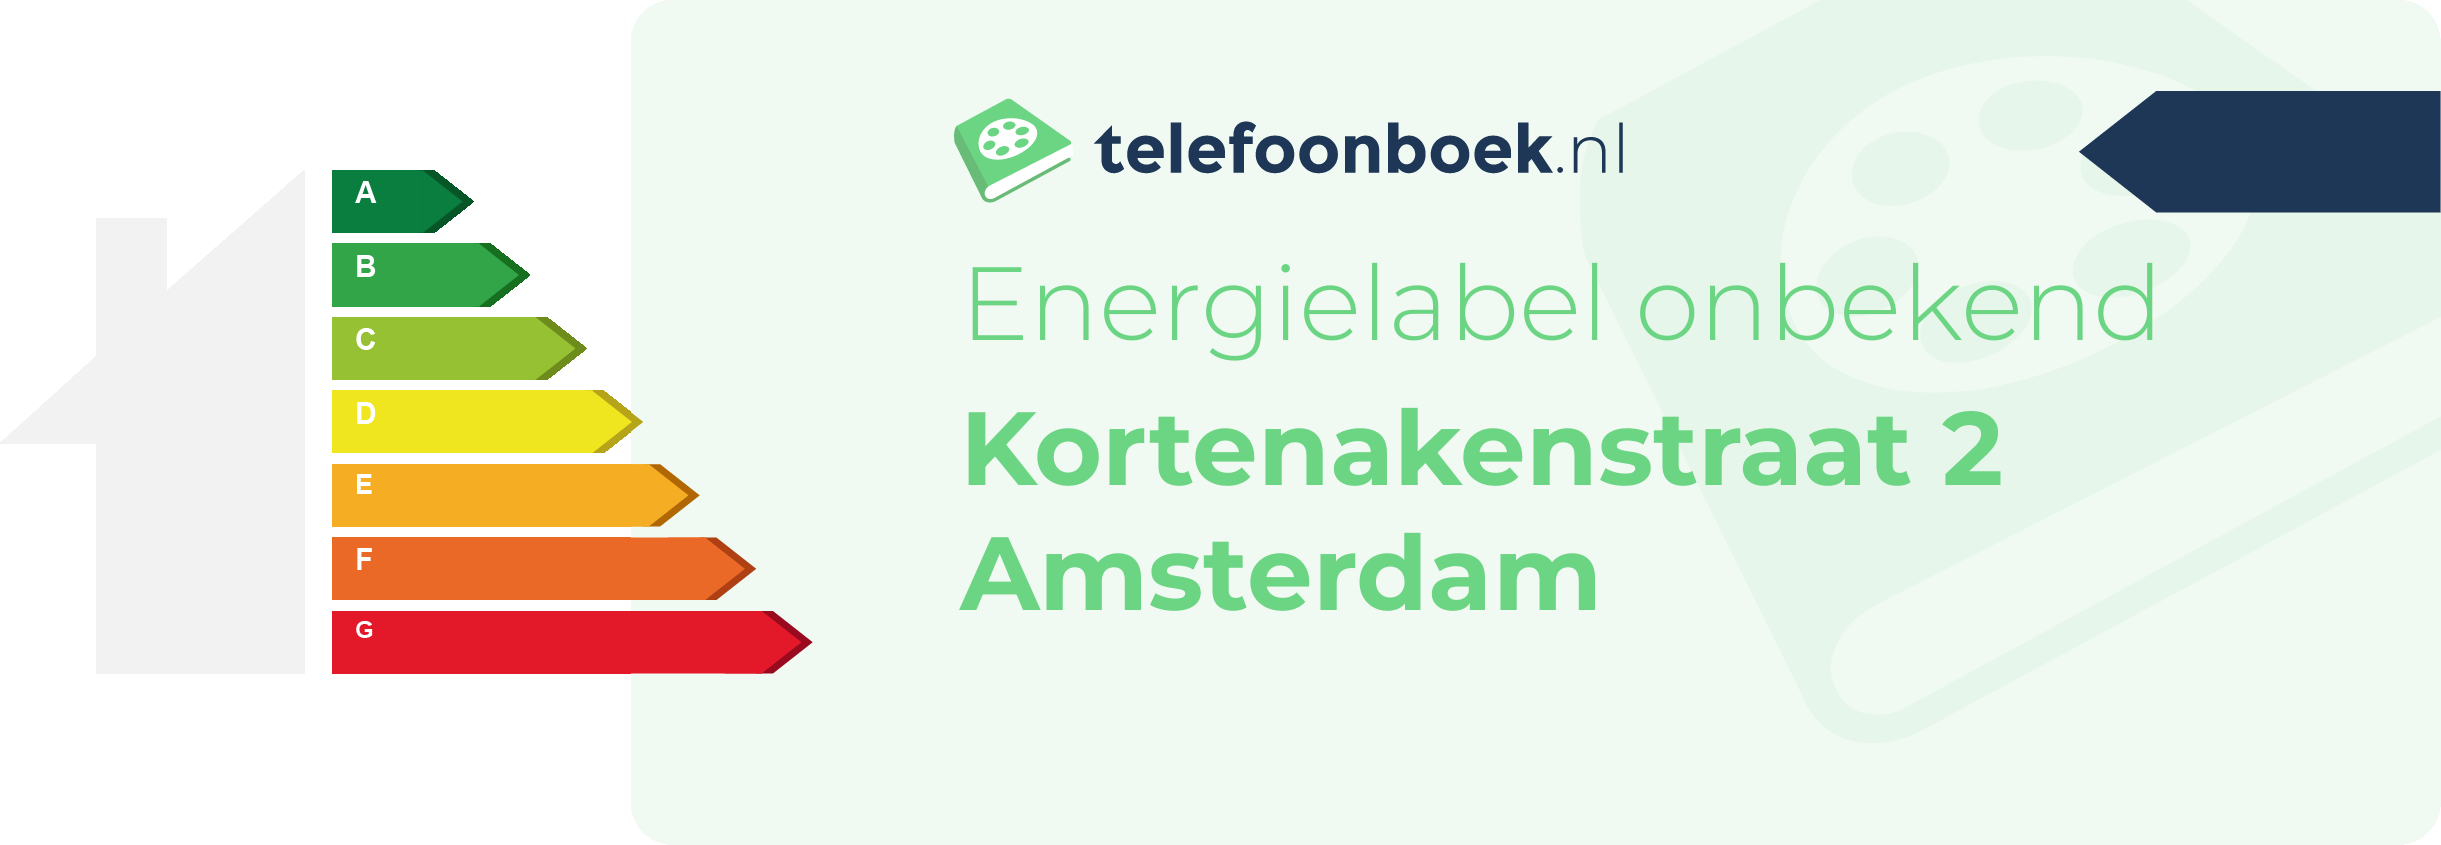 Energielabel Kortenakenstraat 2 Amsterdam